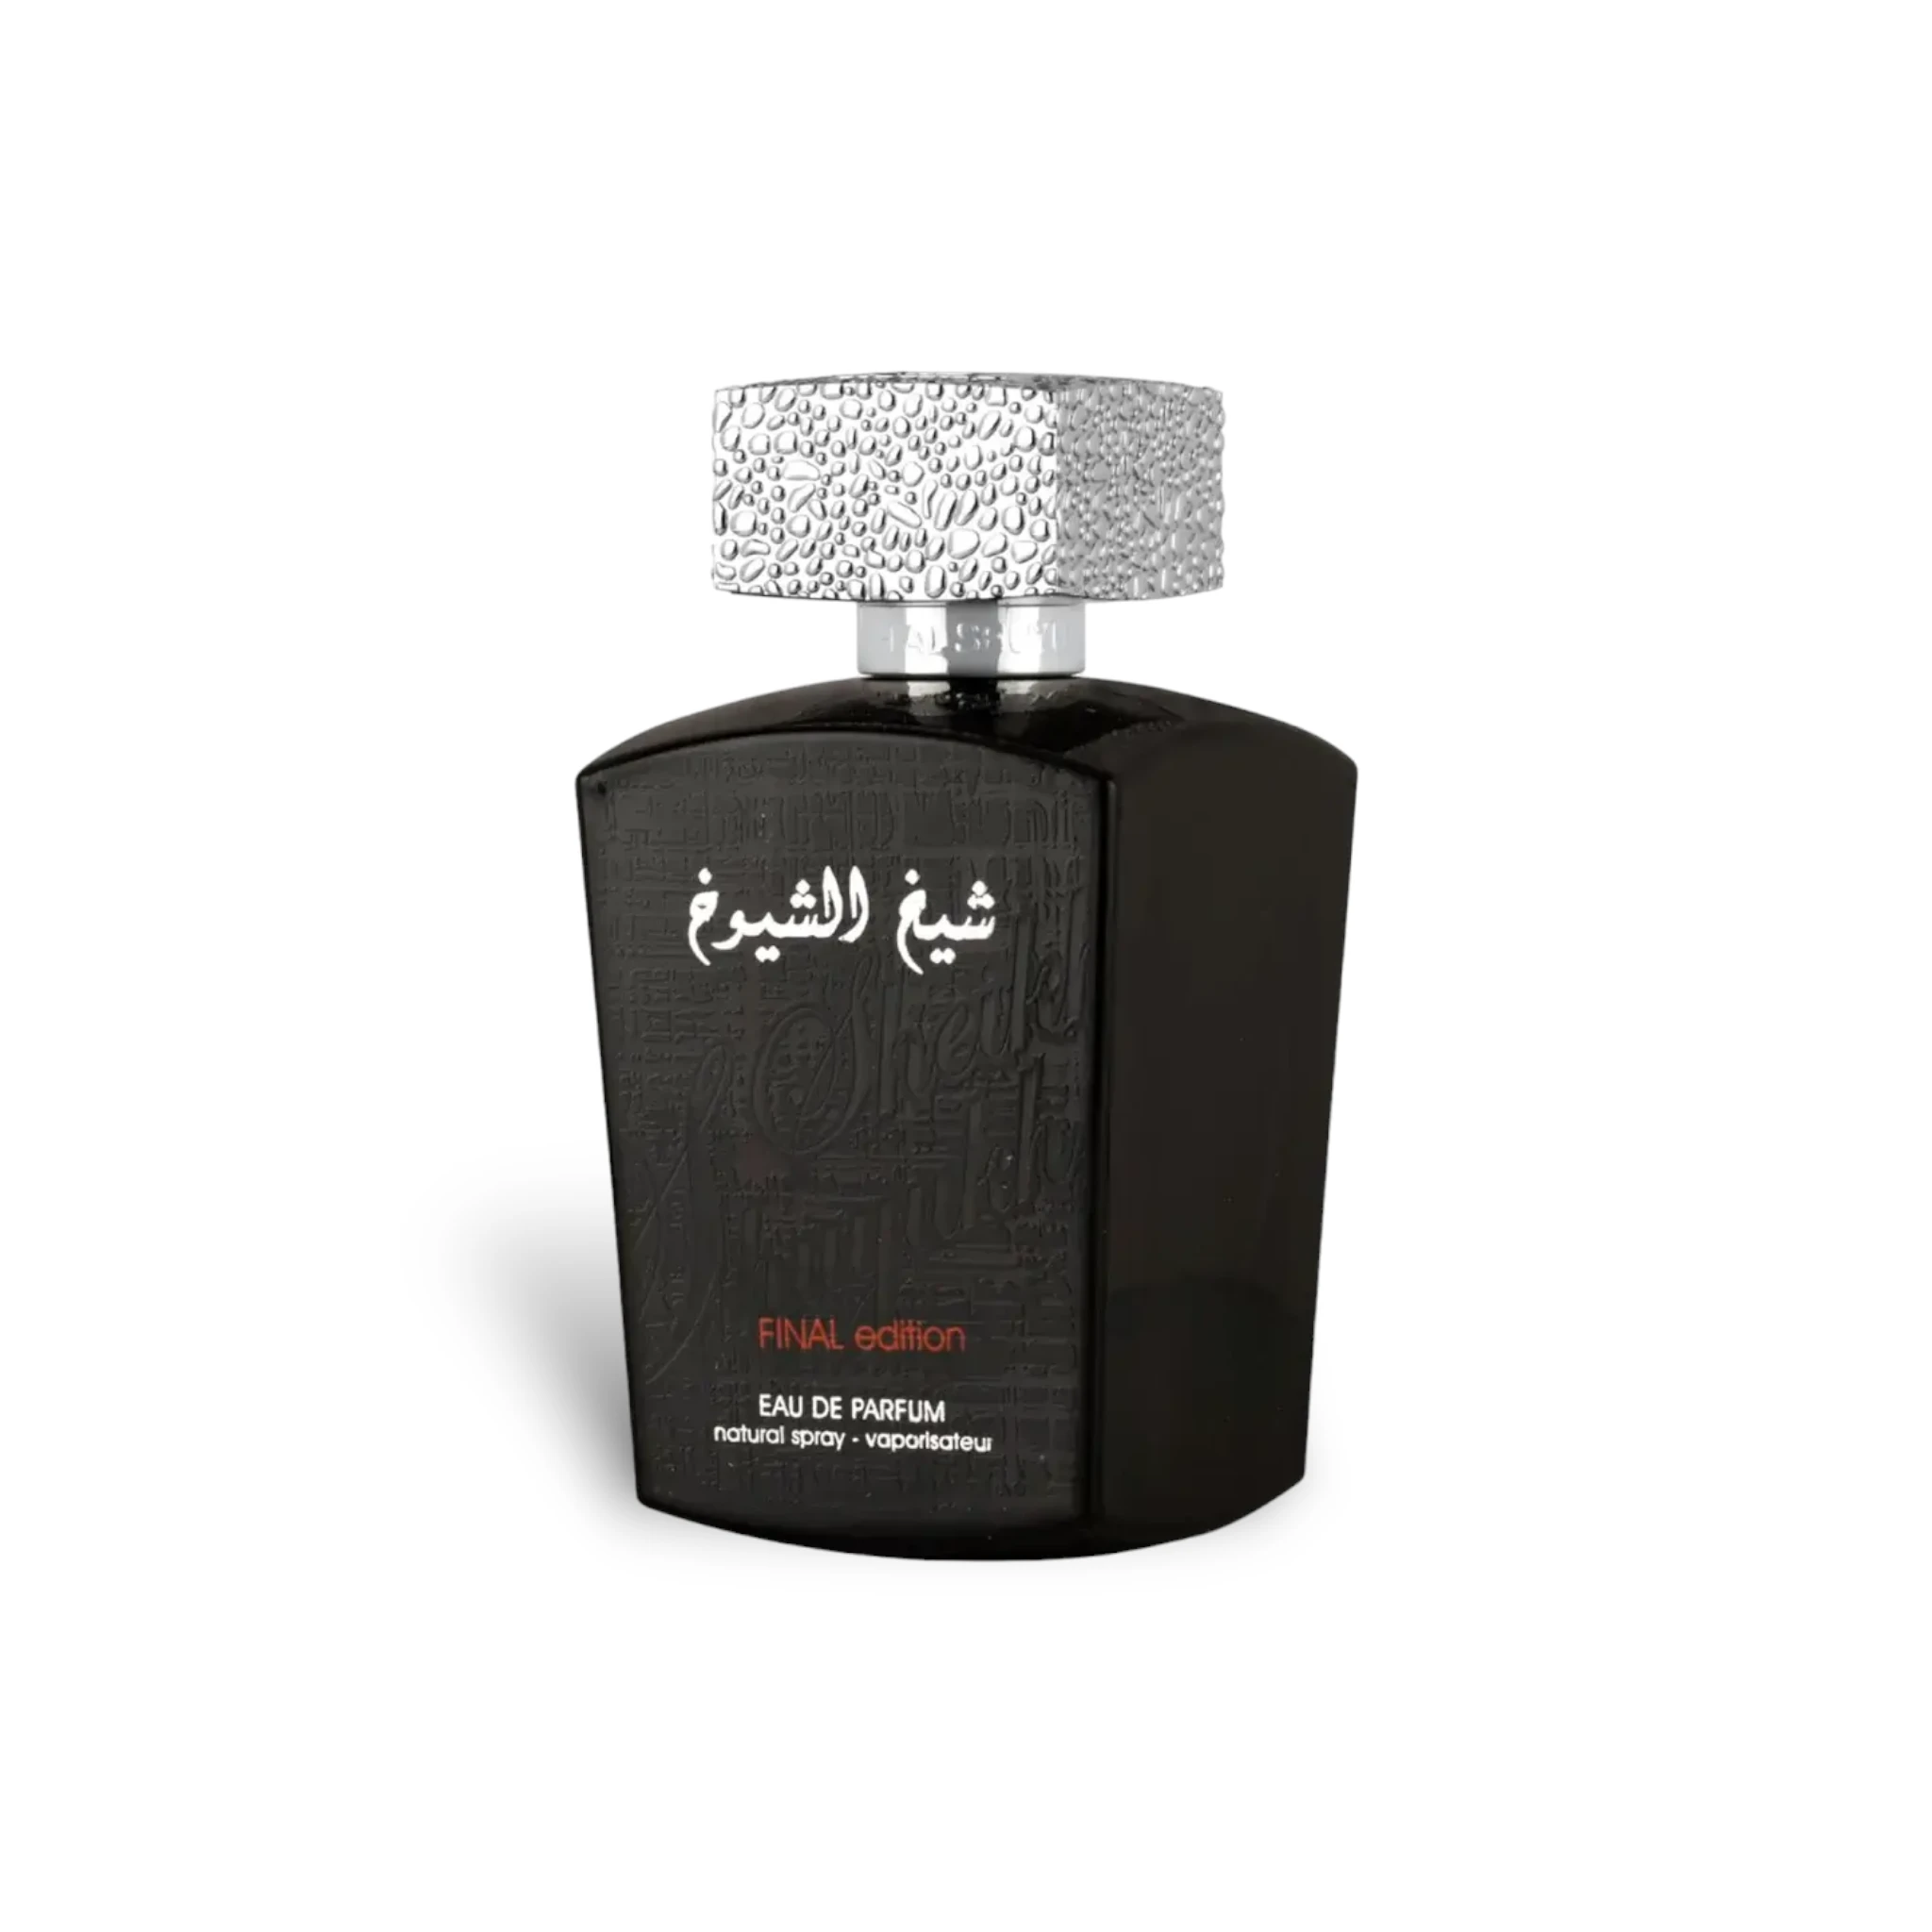 Sheikh Al Shuyukh Final Edition 100Ml Perfume Eau De Parfum By Lattafa